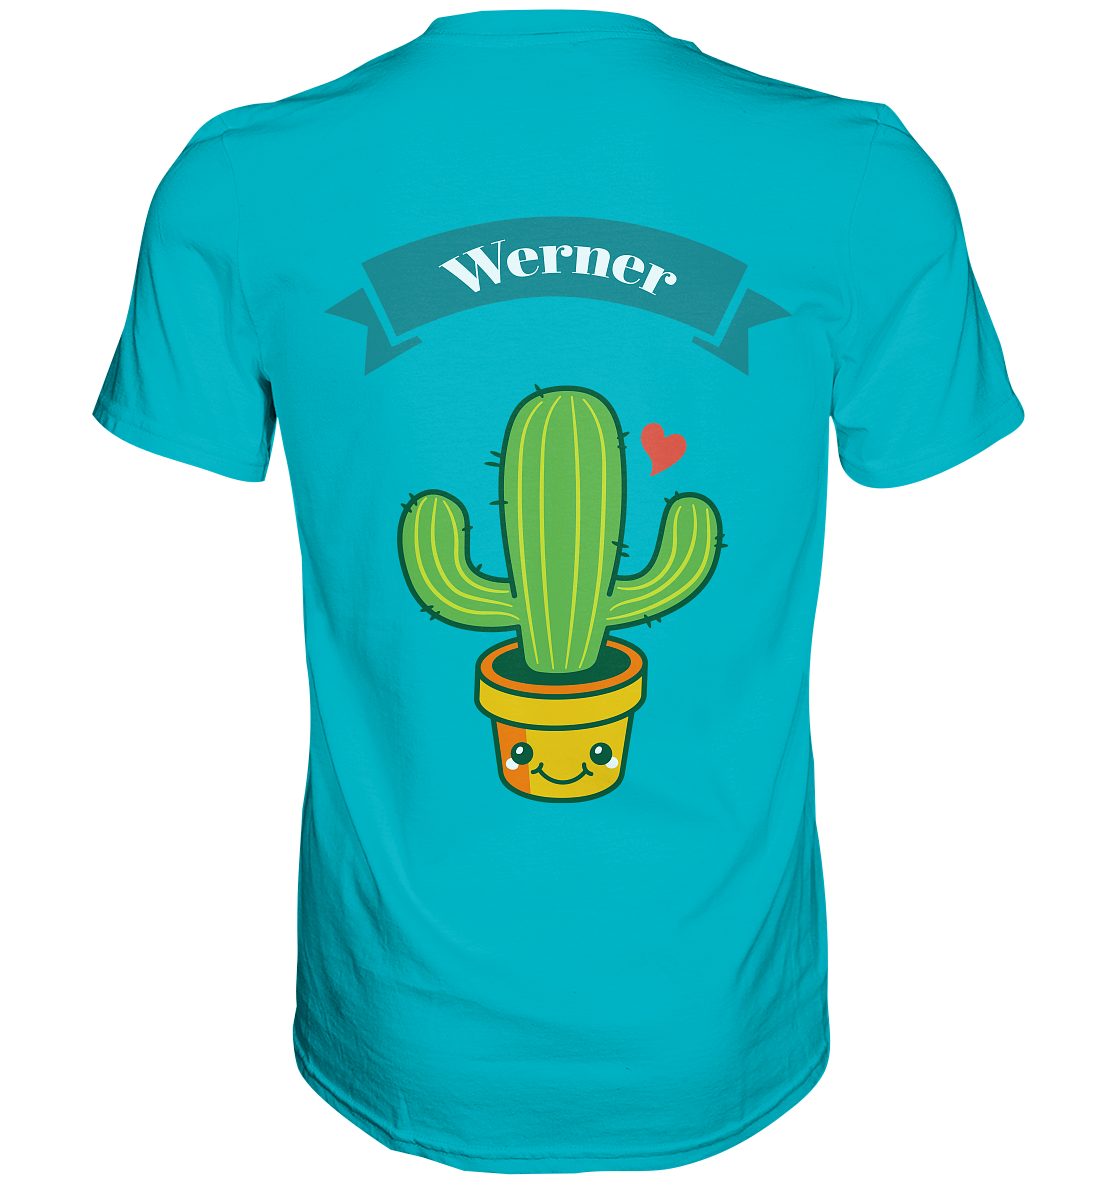 Keine Zeit der Garten ruft Werner - Premium Shirt mit Wunschnamen - Online Kaufhaus München